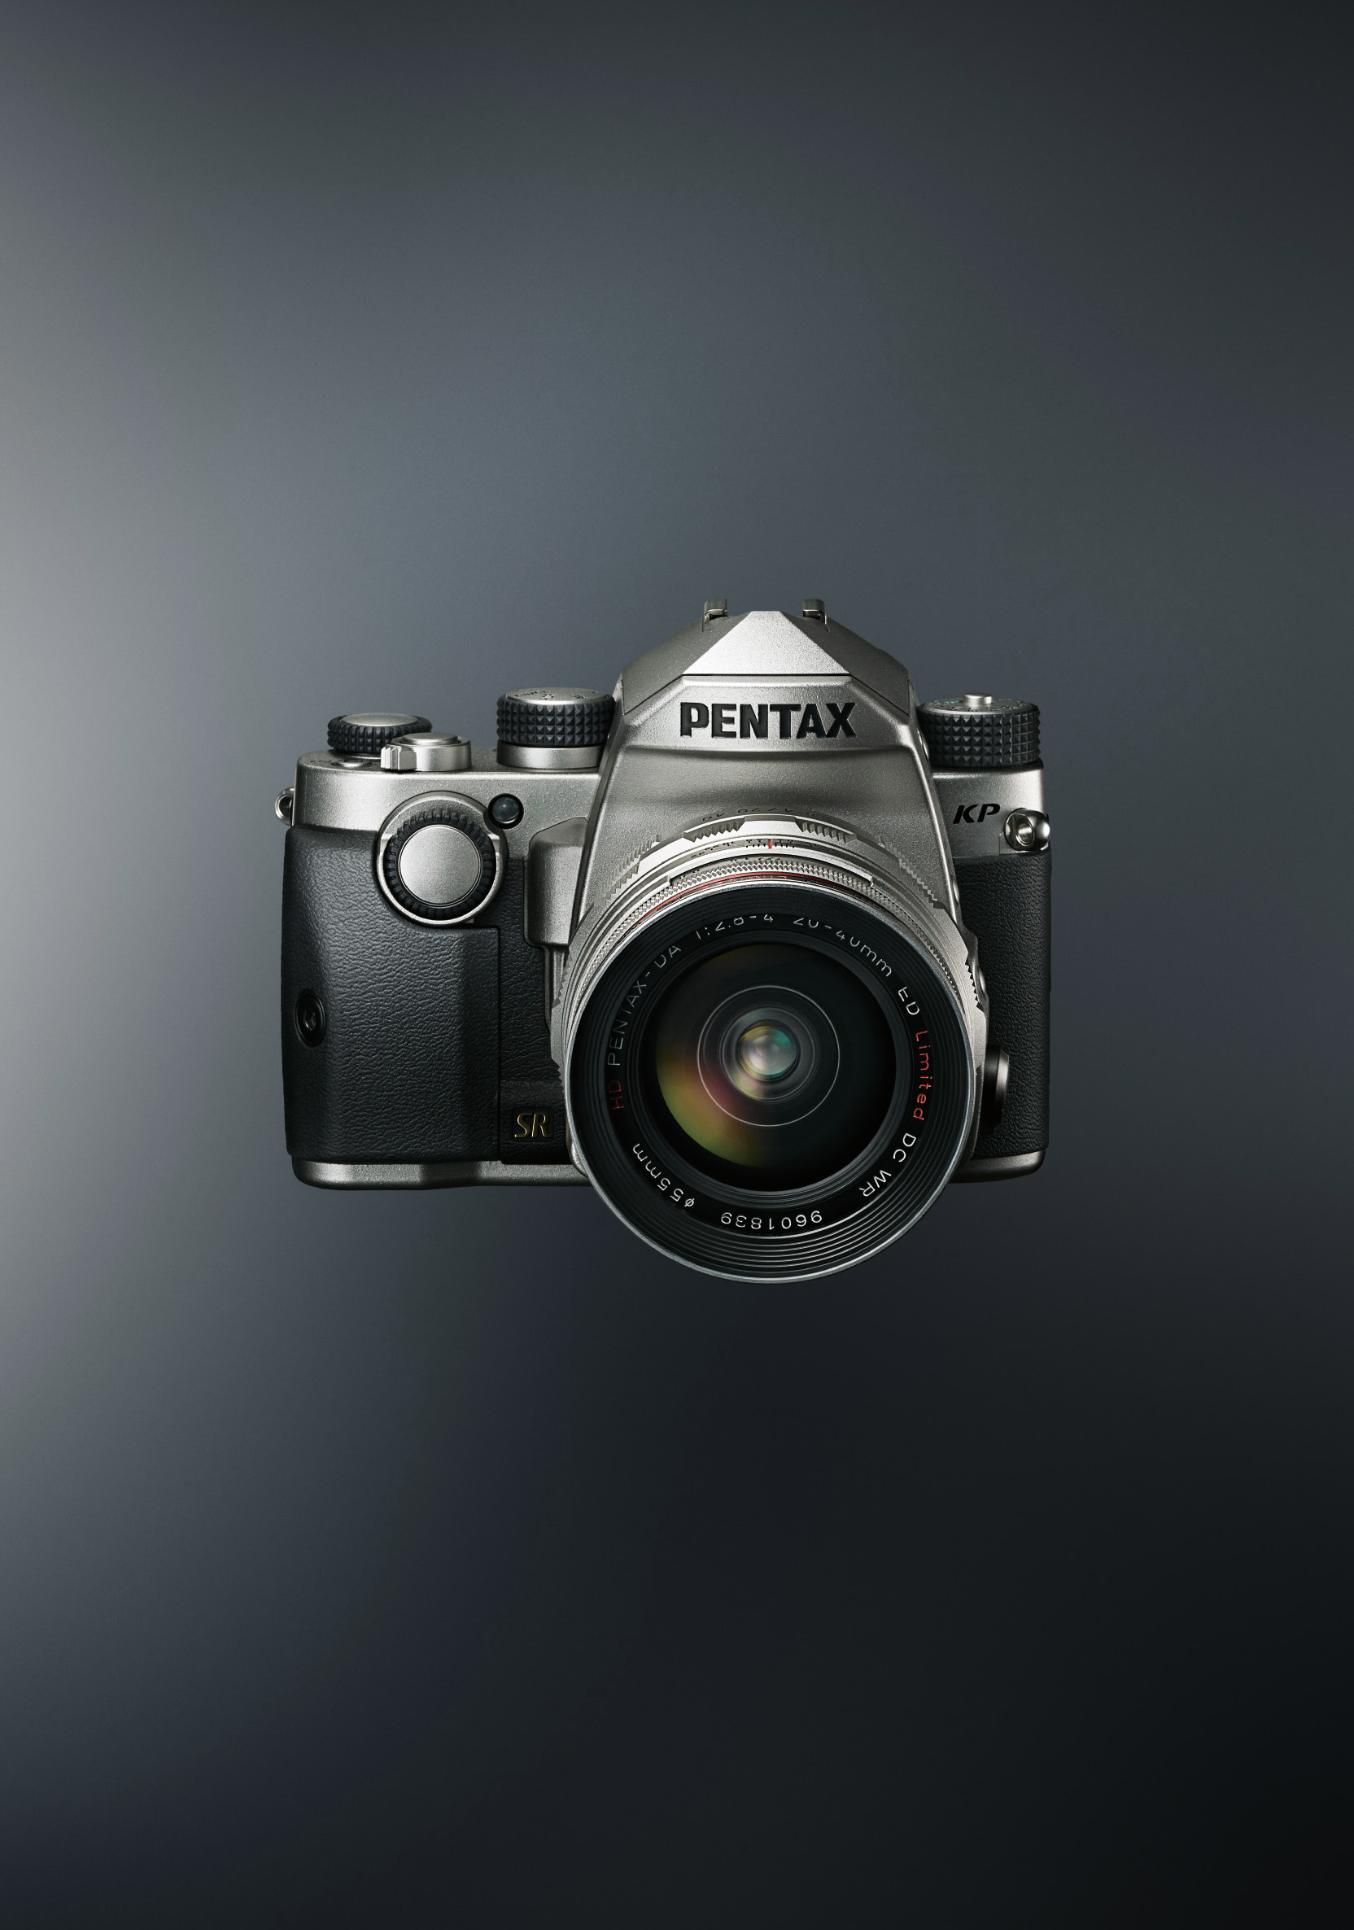 中端数码单反相机「pentax kp」新上市